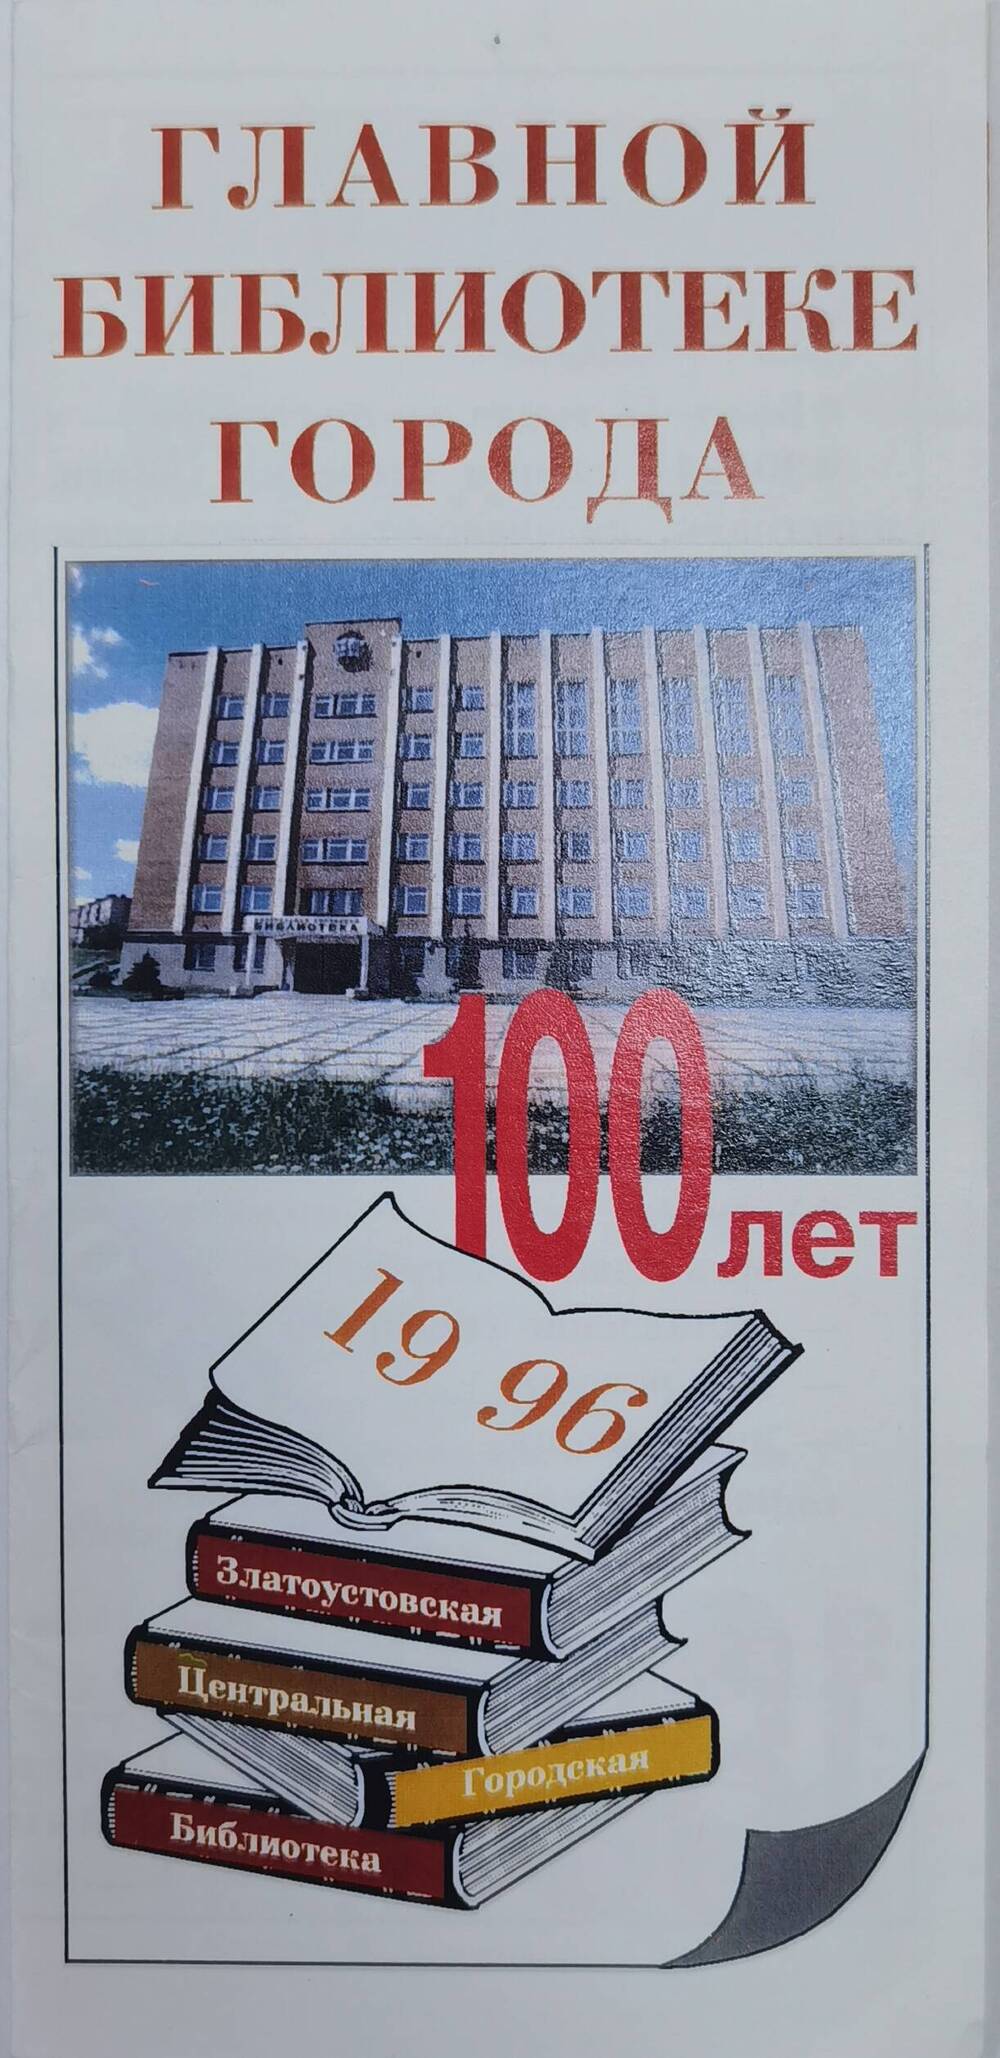 Буклет  рекламный, выпущенный к 100- летию  Центральной городской библиотеки, 1996 г.